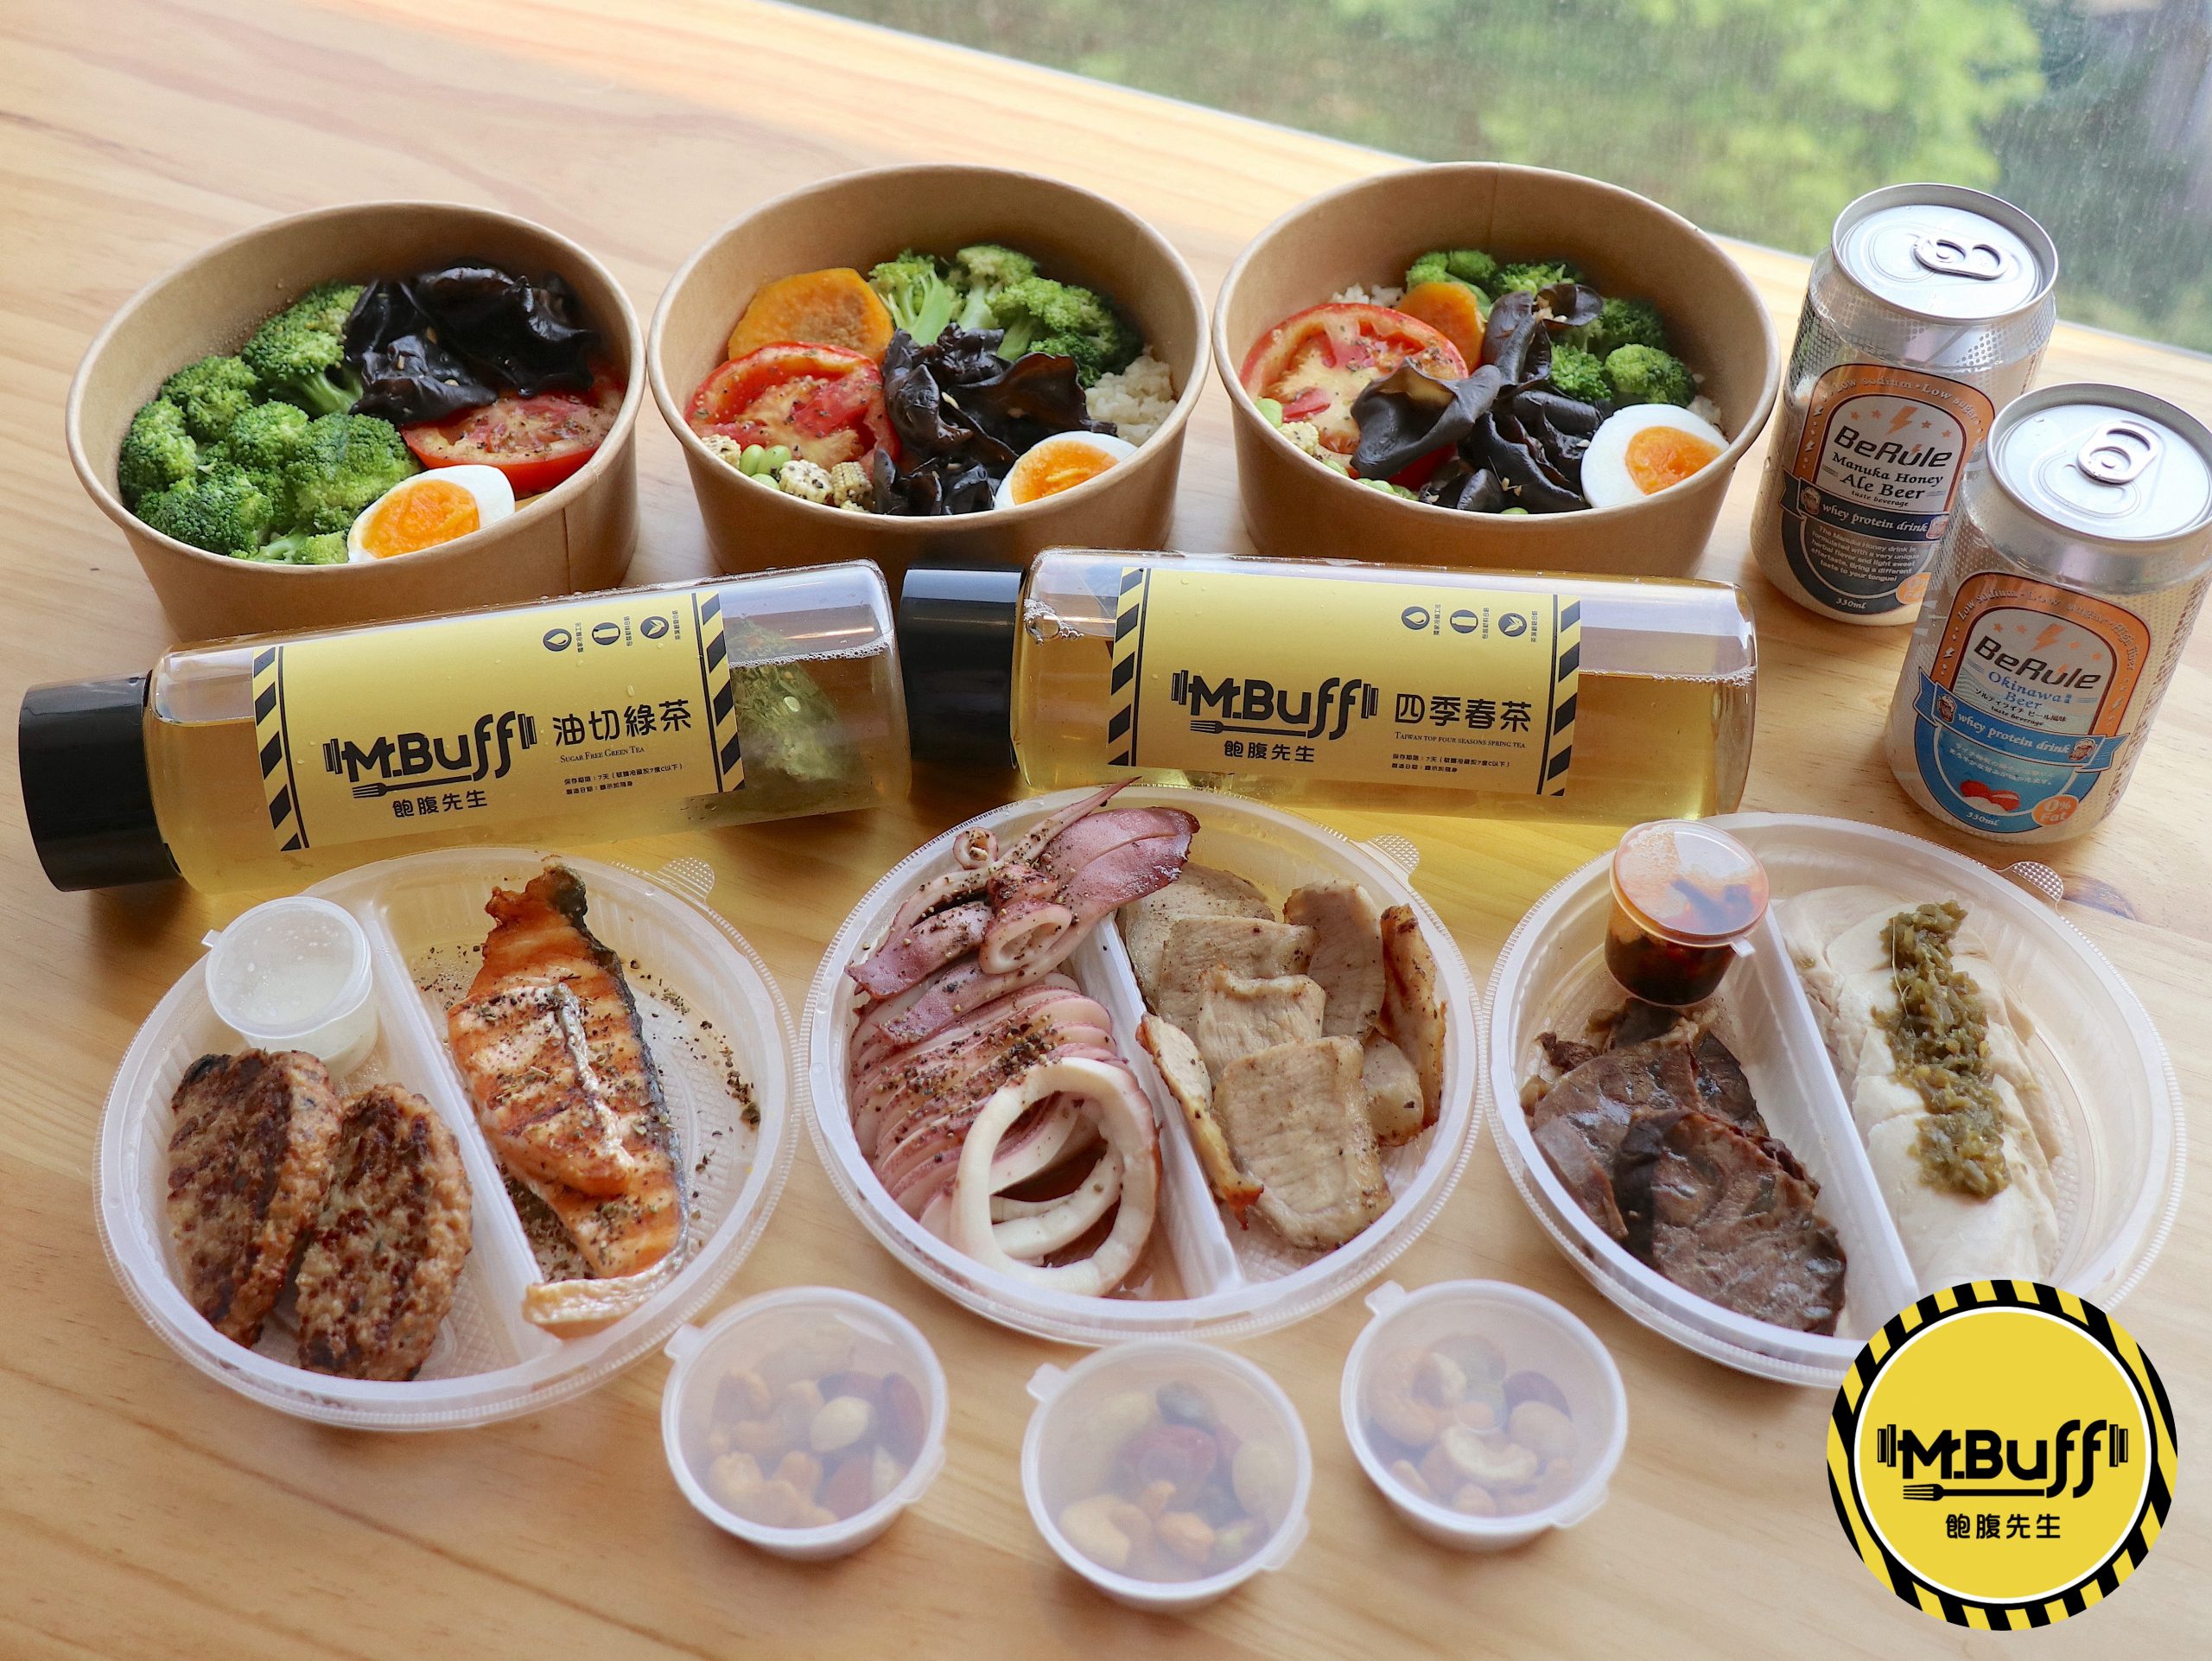 東大門,美食,豆腐鍋,韓國,首爾 @Helena's Blog